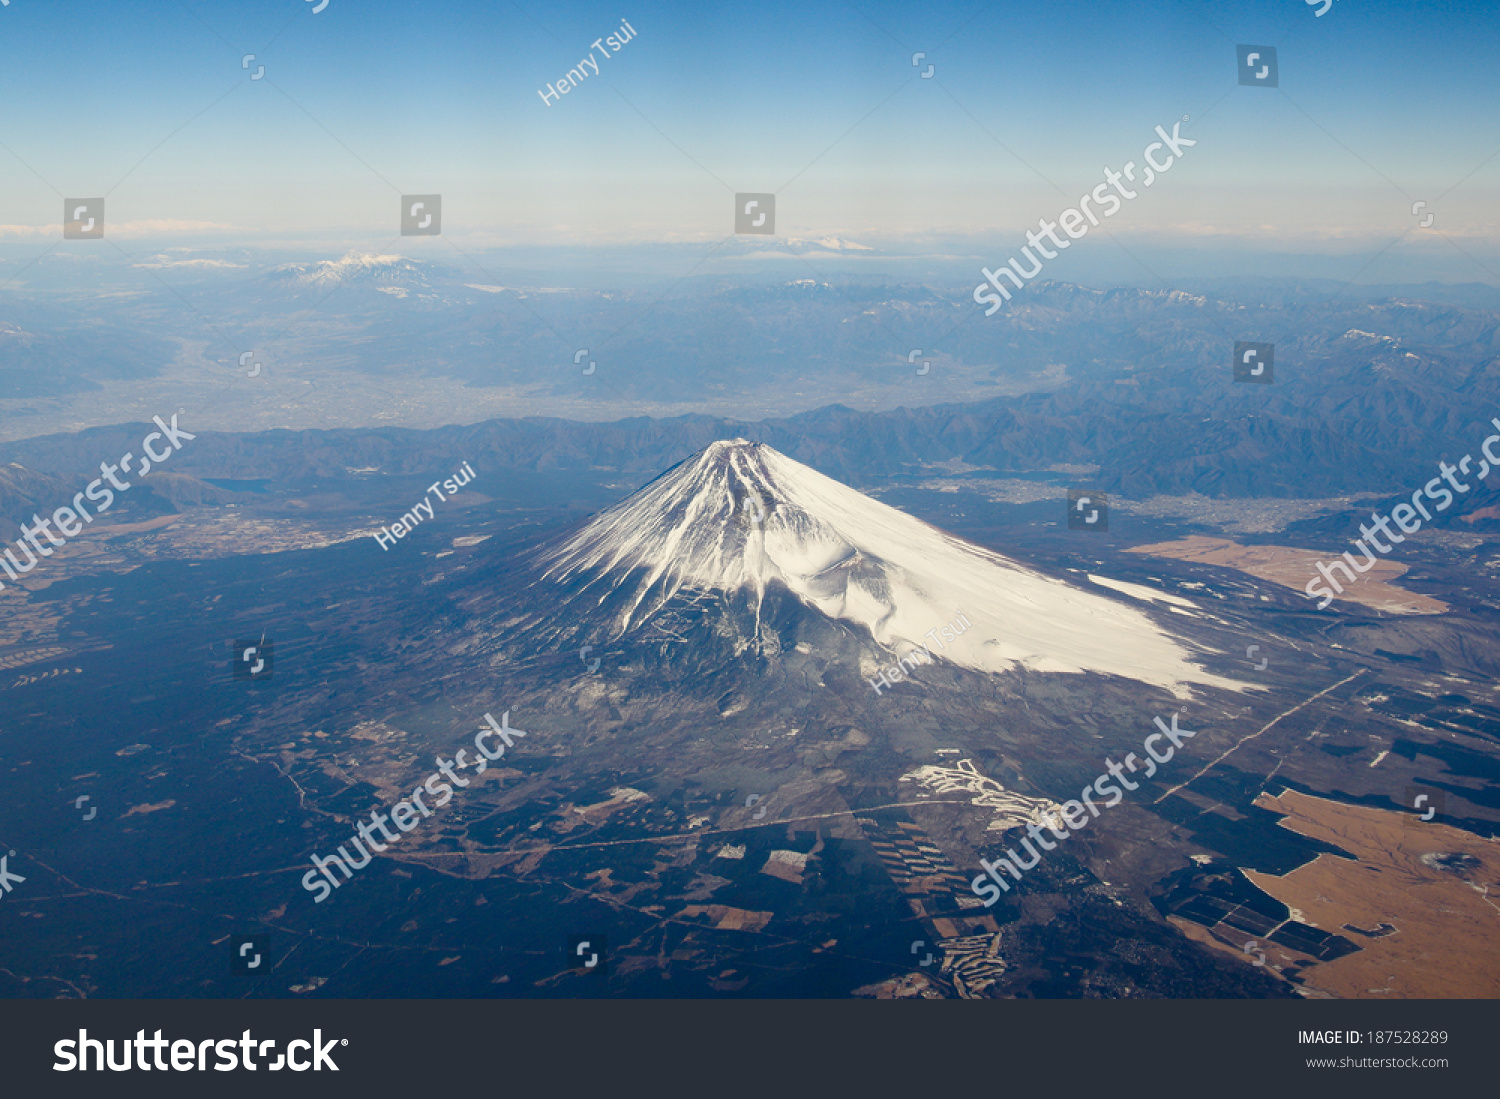 Mountain Fuji Bird'S Eye View, Japan Stock Photo 187528289 : Shutterstock